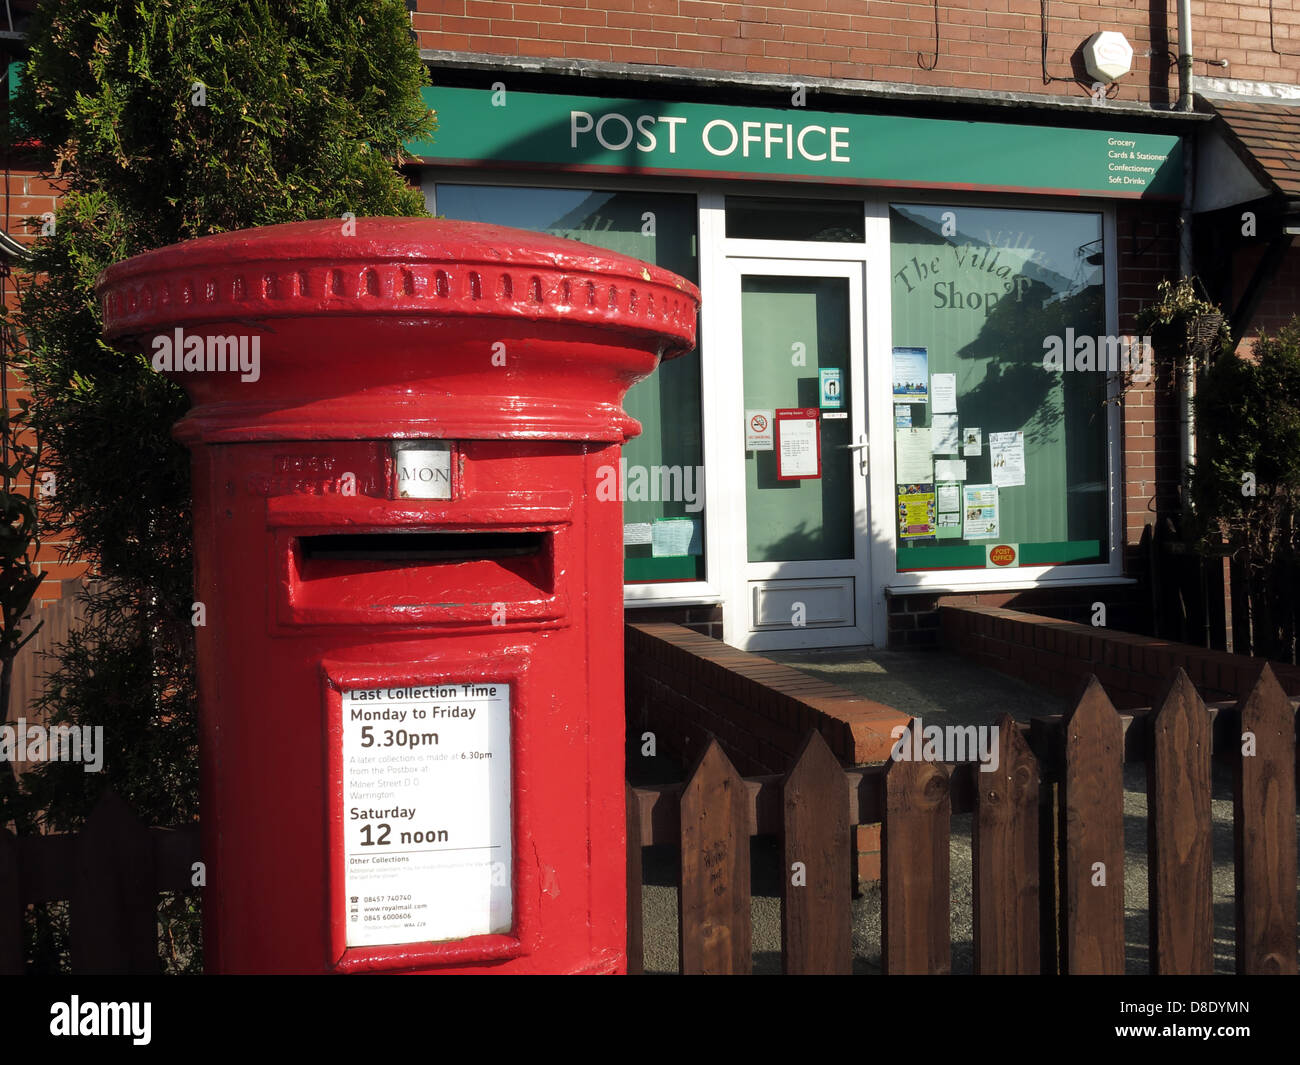 Ufficio postale di Red pilastro e villaggio, 18 Landi Avenue, Grappenhall Village, Warrington, Cheshire, Inghilterra, Regno Unito WA4 2SJ Foto Stock